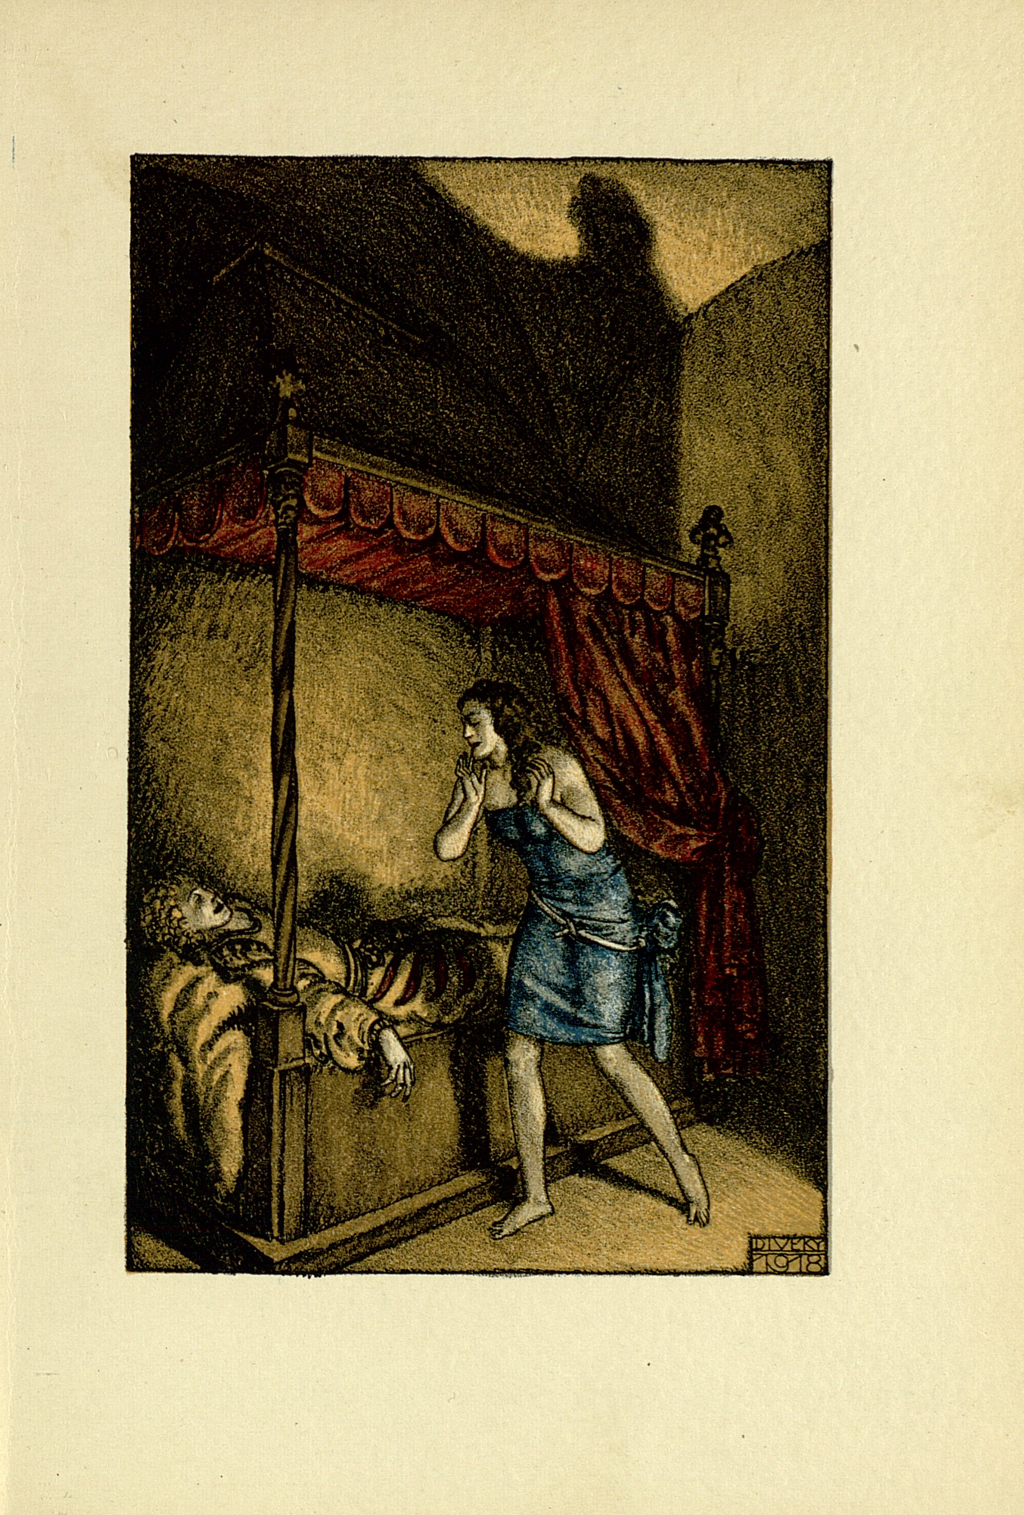 Lithographie zu "Isabella von Ägypten" Kaiser Karl der Fünfte liegt auf einem prunkvollen Bett mit rotem Baldachin, über ihm steht Isabell in einem blauen, knielangen Kleid.